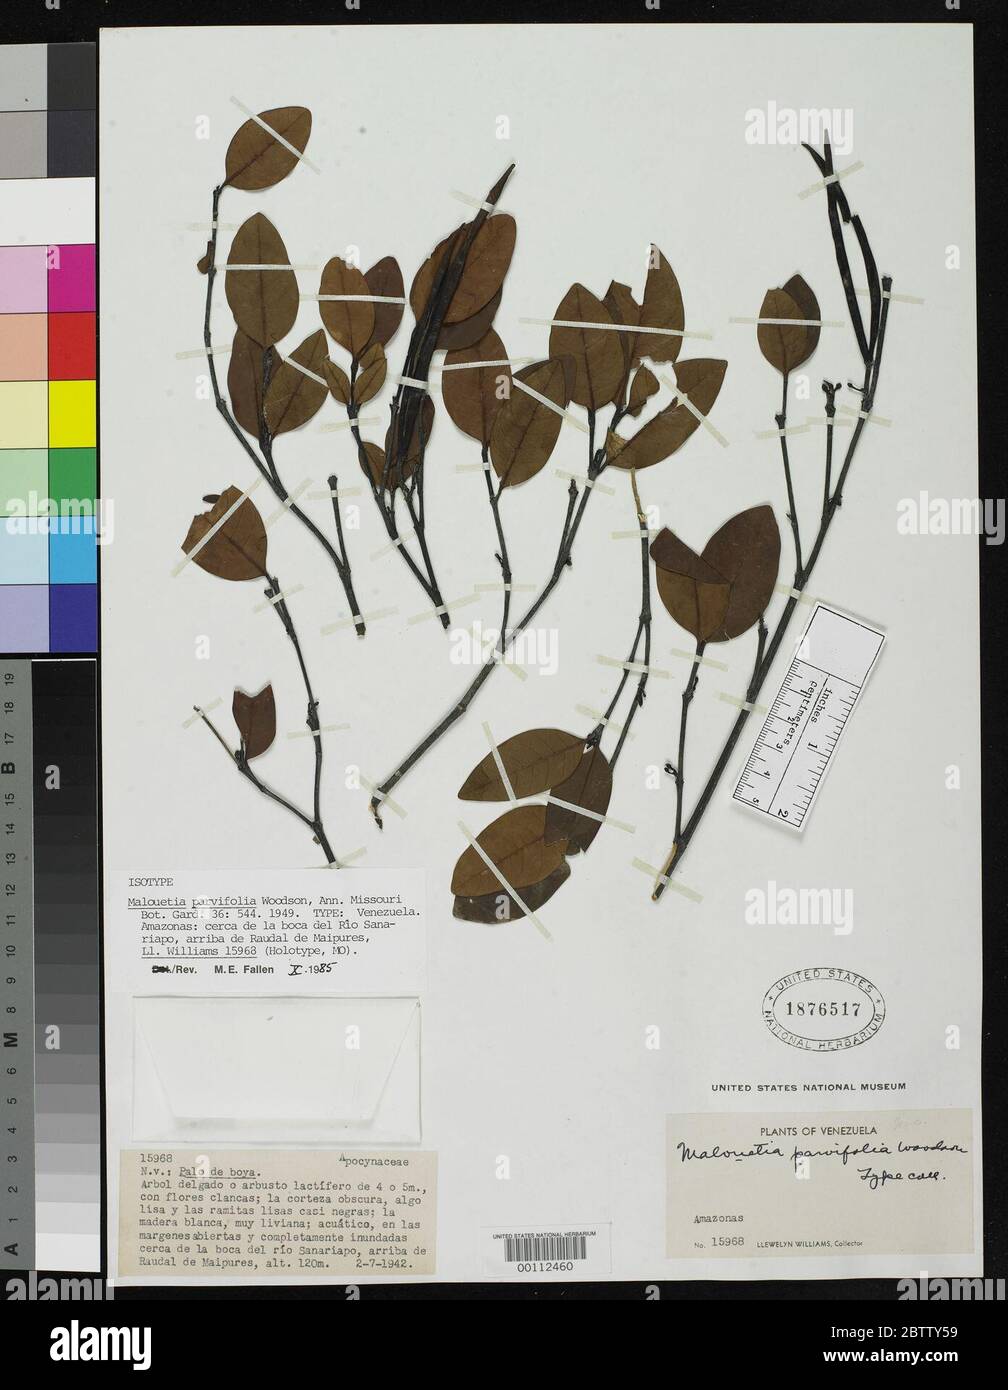 Malouetia parvifolia Woodson. Stock Photo